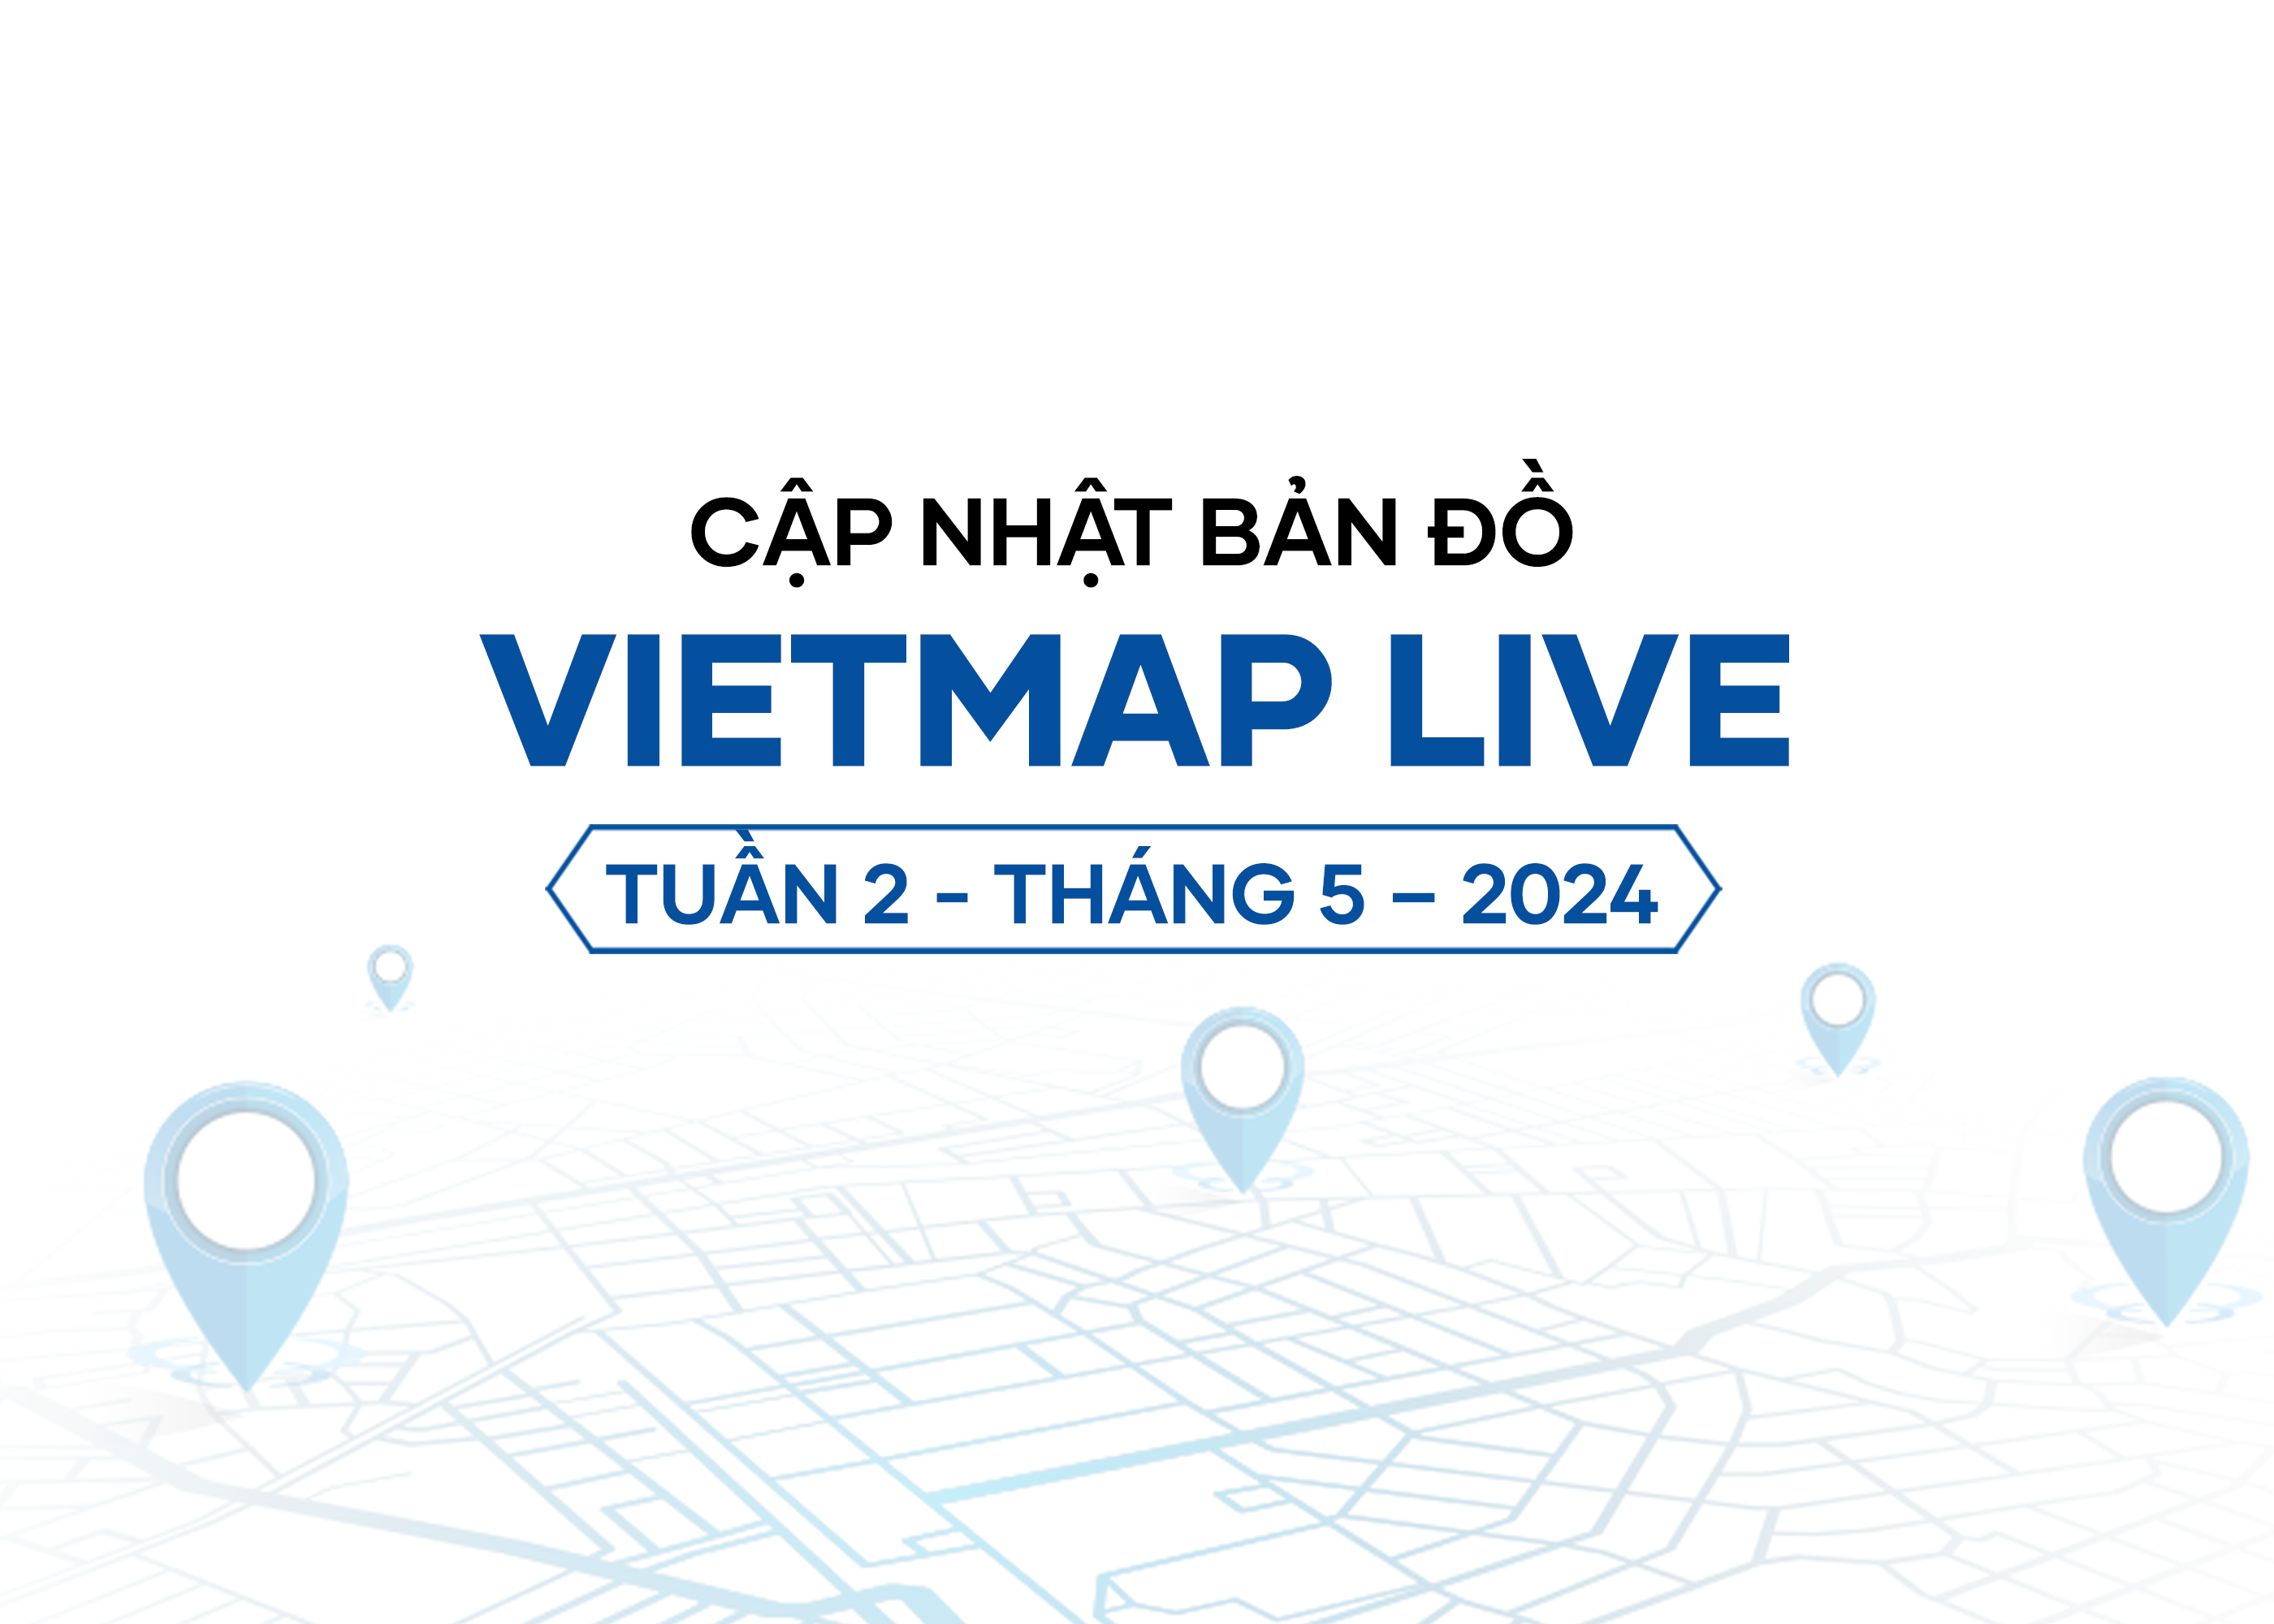 VIETMAP LIVE cập nhật dữ liệu bản đồ Tuần 2 - Tháng 5/2024